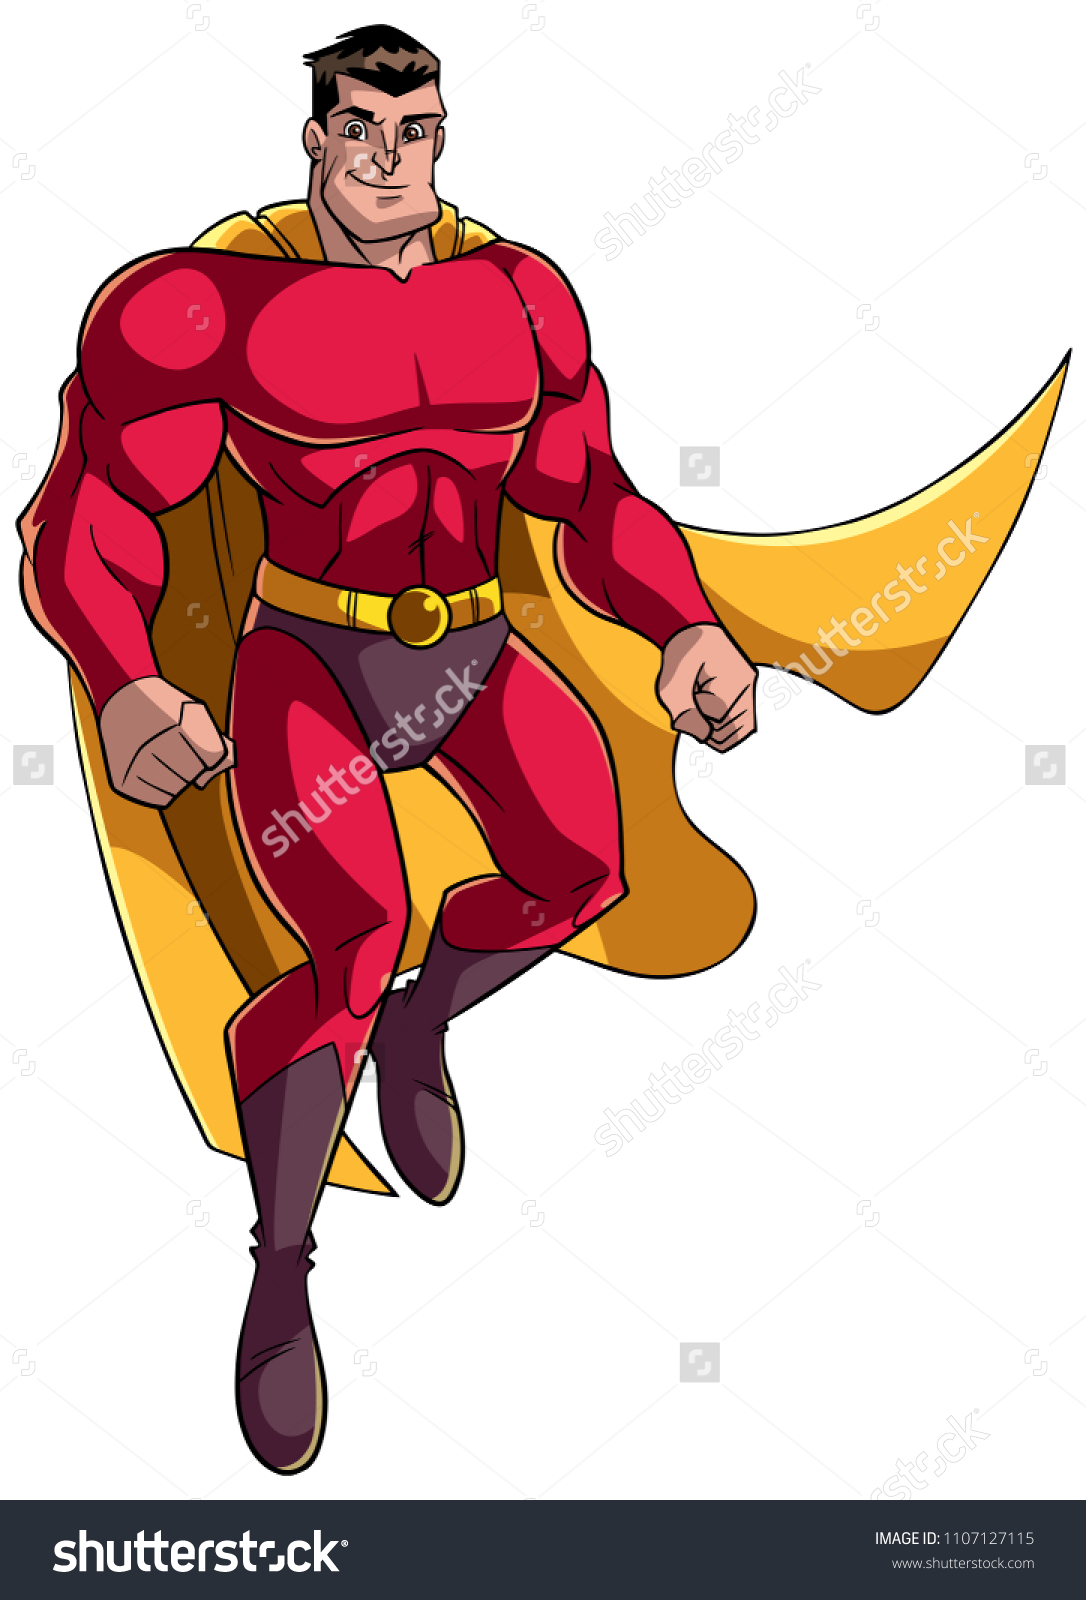 コピー用の白い背景に飛行中 マントと赤い衣装を着て飛行中に飛び上がる幸せな漫画のスーパーヒーローの全長イラスト のベクター画像素材 ロイヤリティフリー